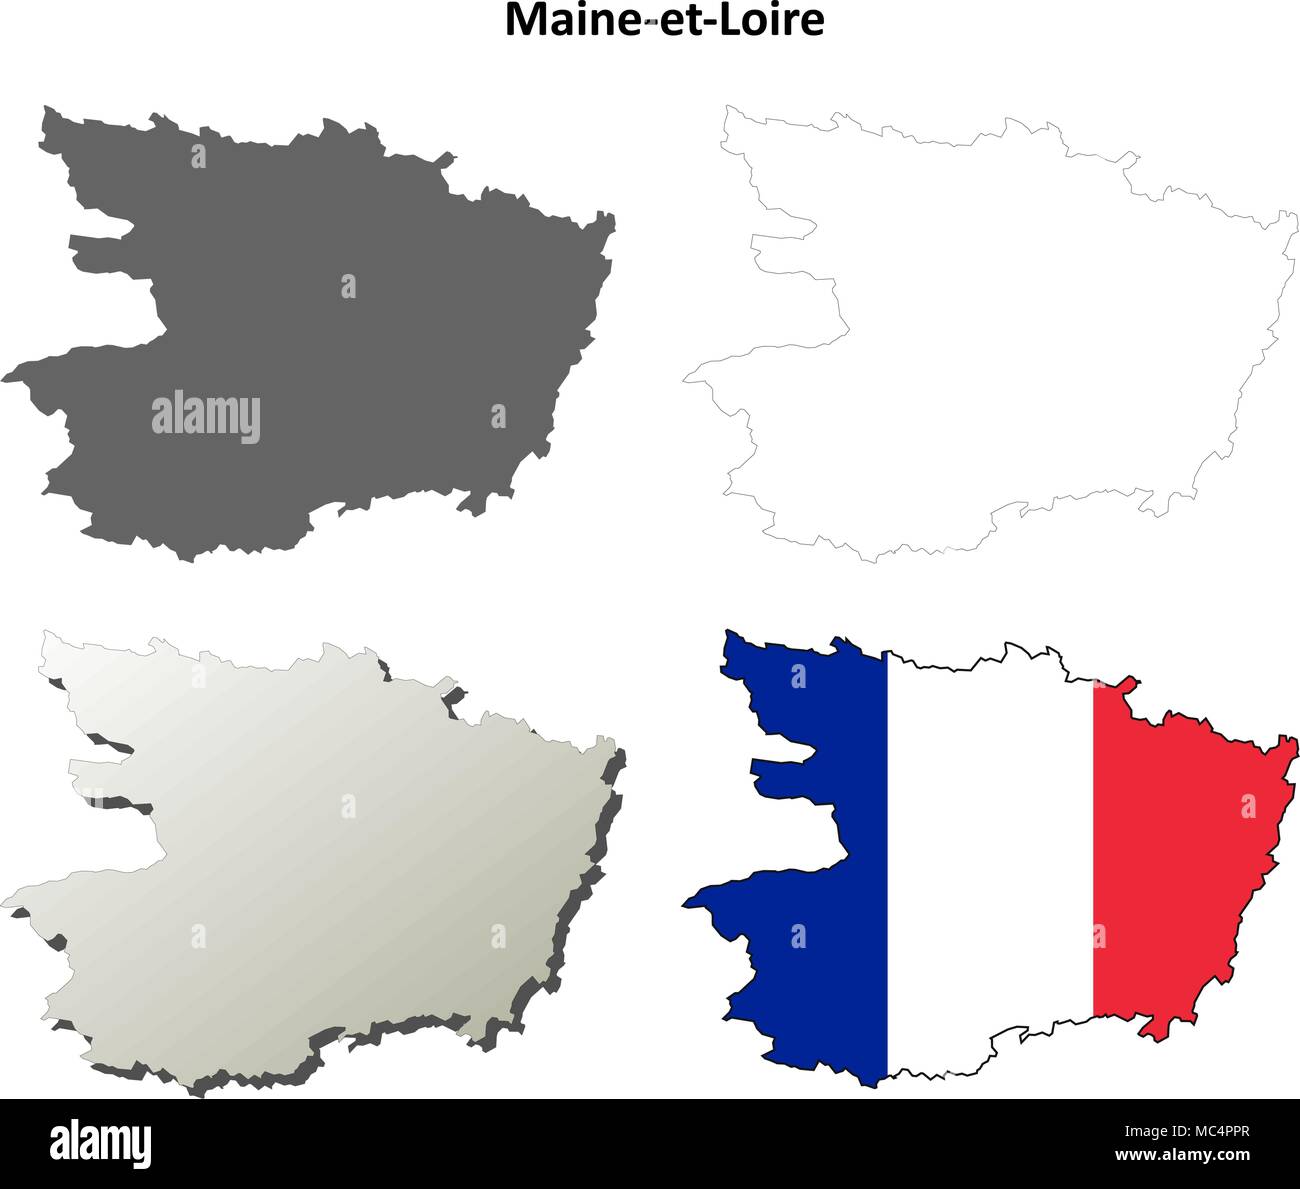 Maine-et-Loire, Pays de la Loire mappa di contorno impostato Illustrazione Vettoriale